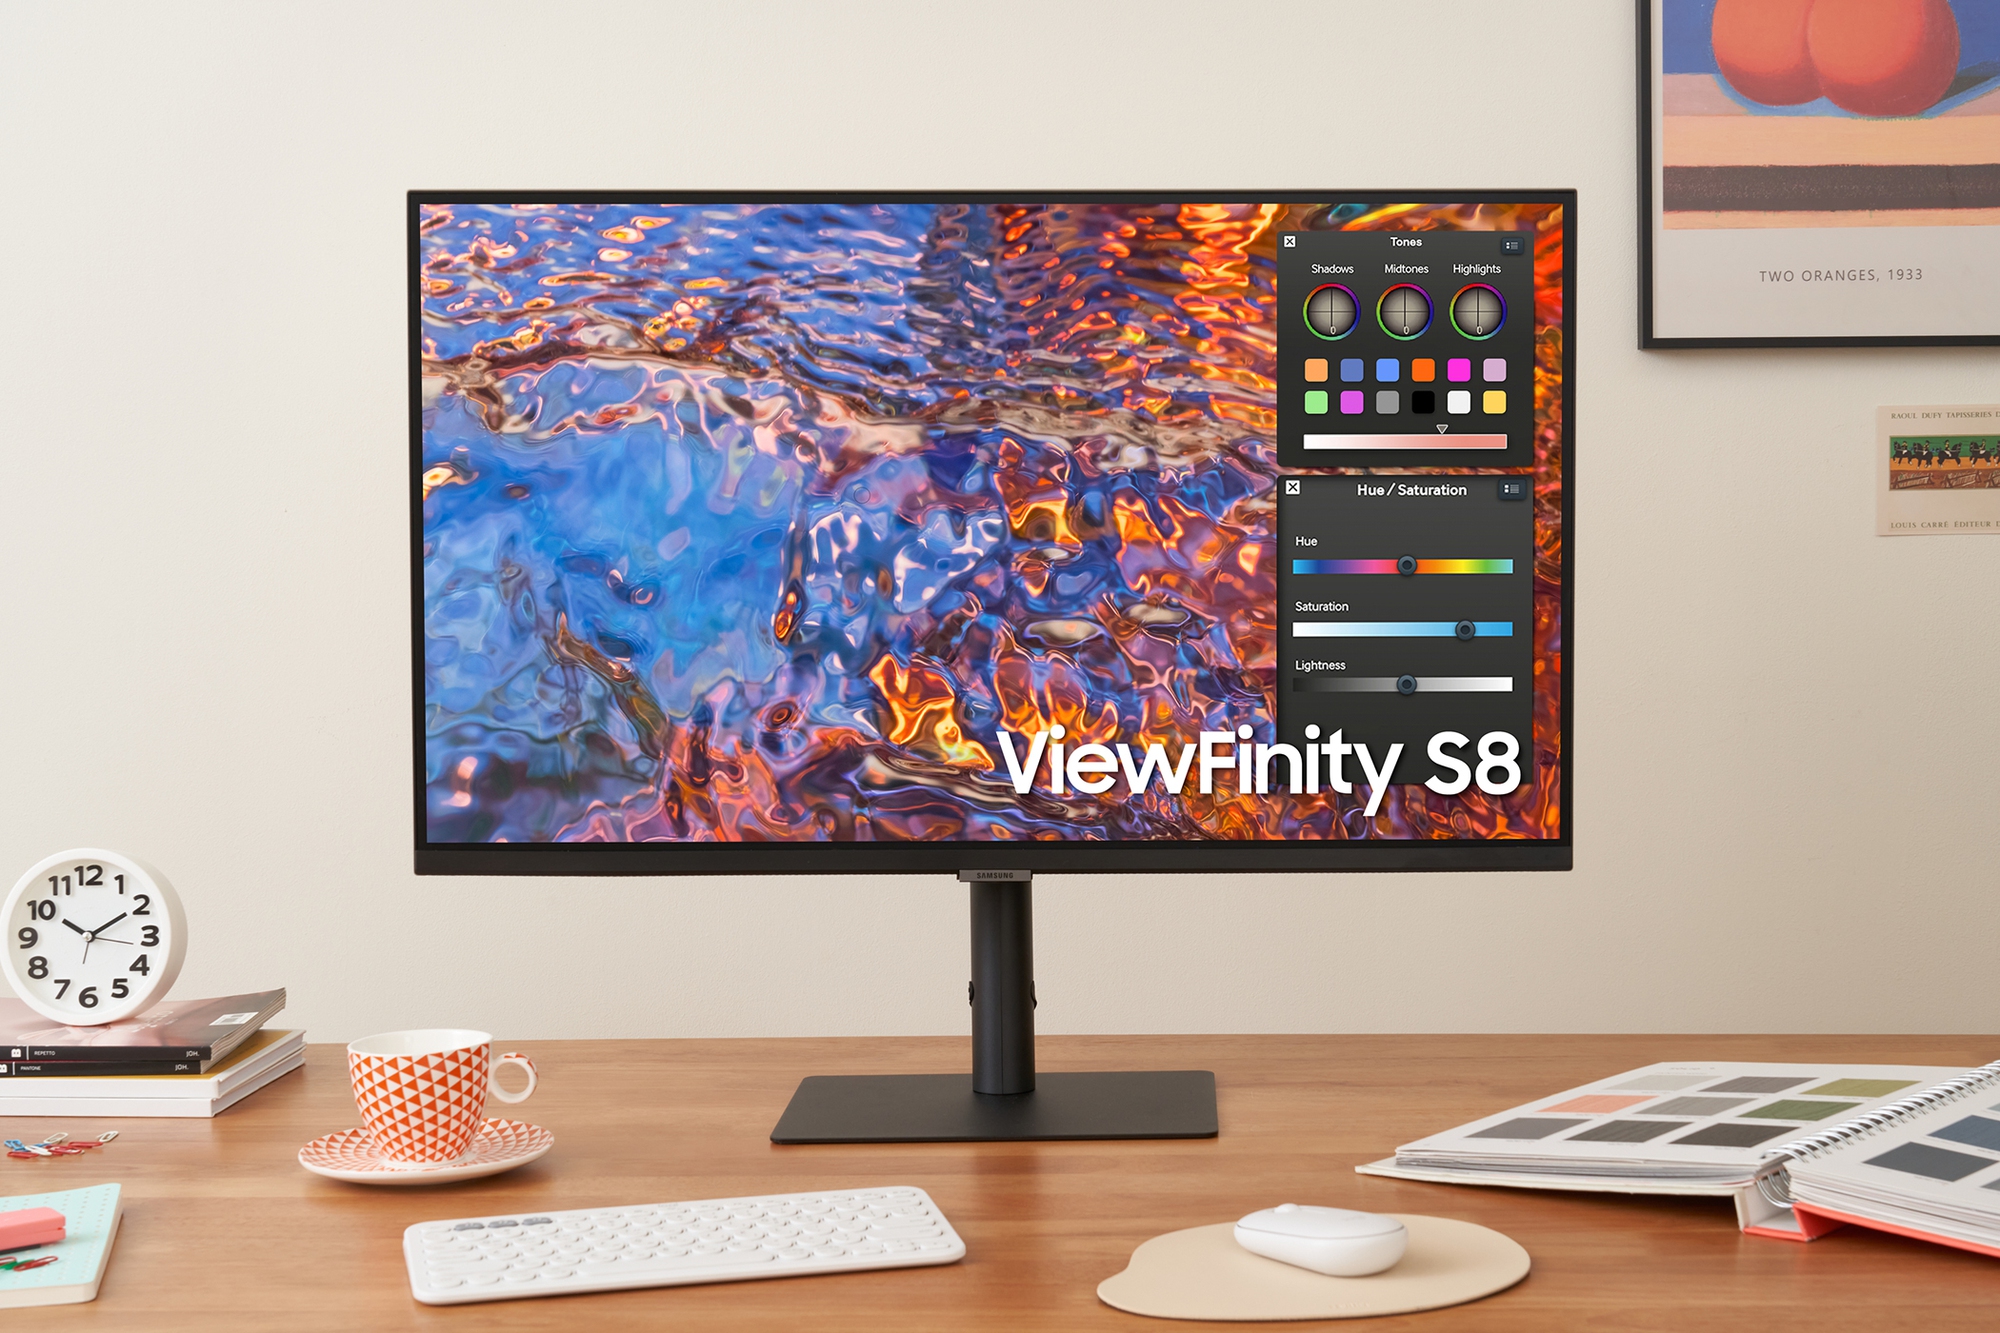 Dân sáng tạo nói gì về màn hình siêu hiệu suất Samsung ViewFinity S8? - Ảnh 3.